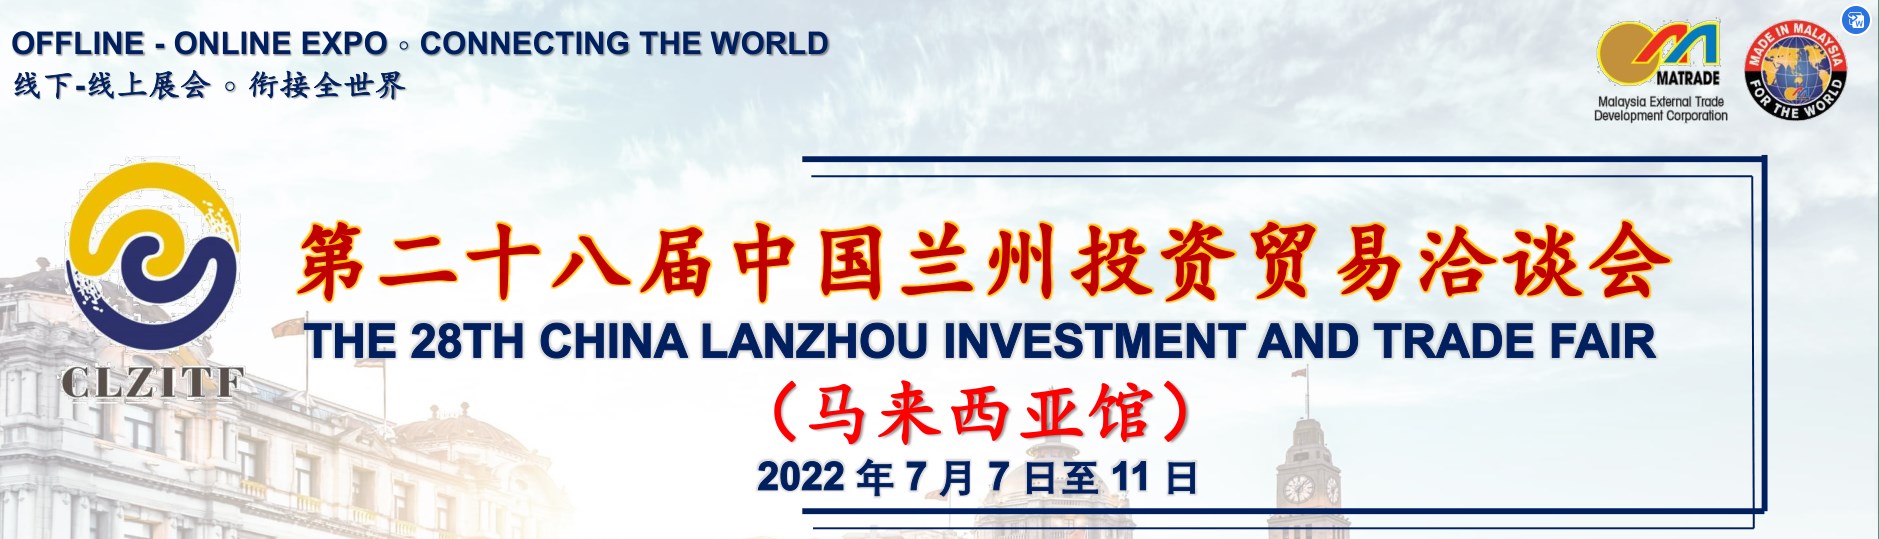 יריד ההשקעות והמסחר ה-28 בסין לנז'ו